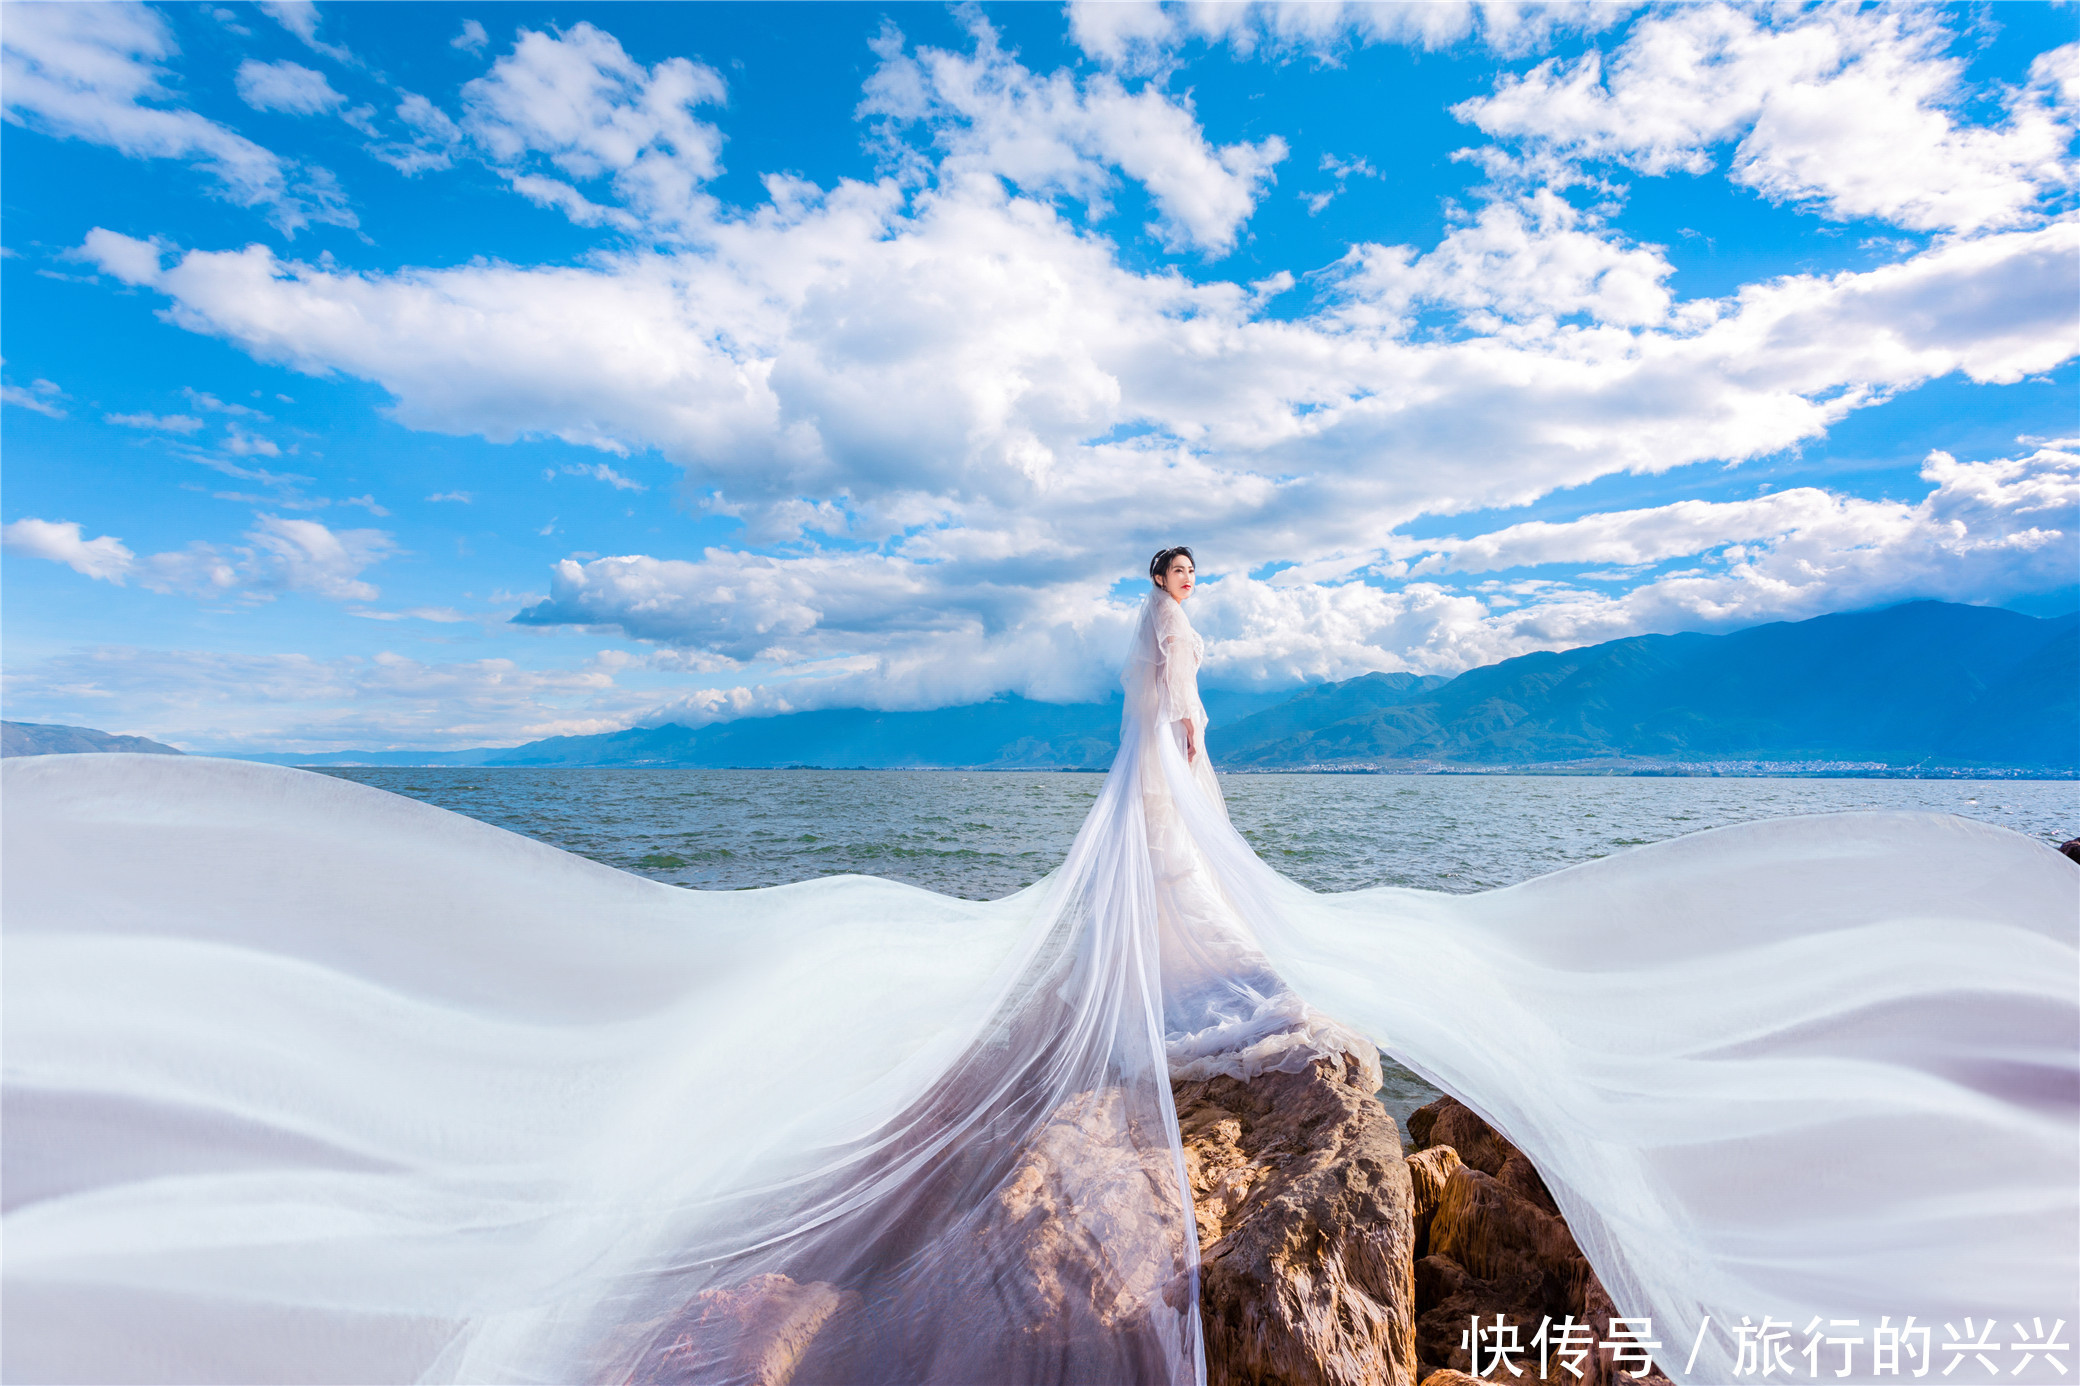 大理旅拍景点推荐:去大理洱海拍婚纱照,一秒get氛围感